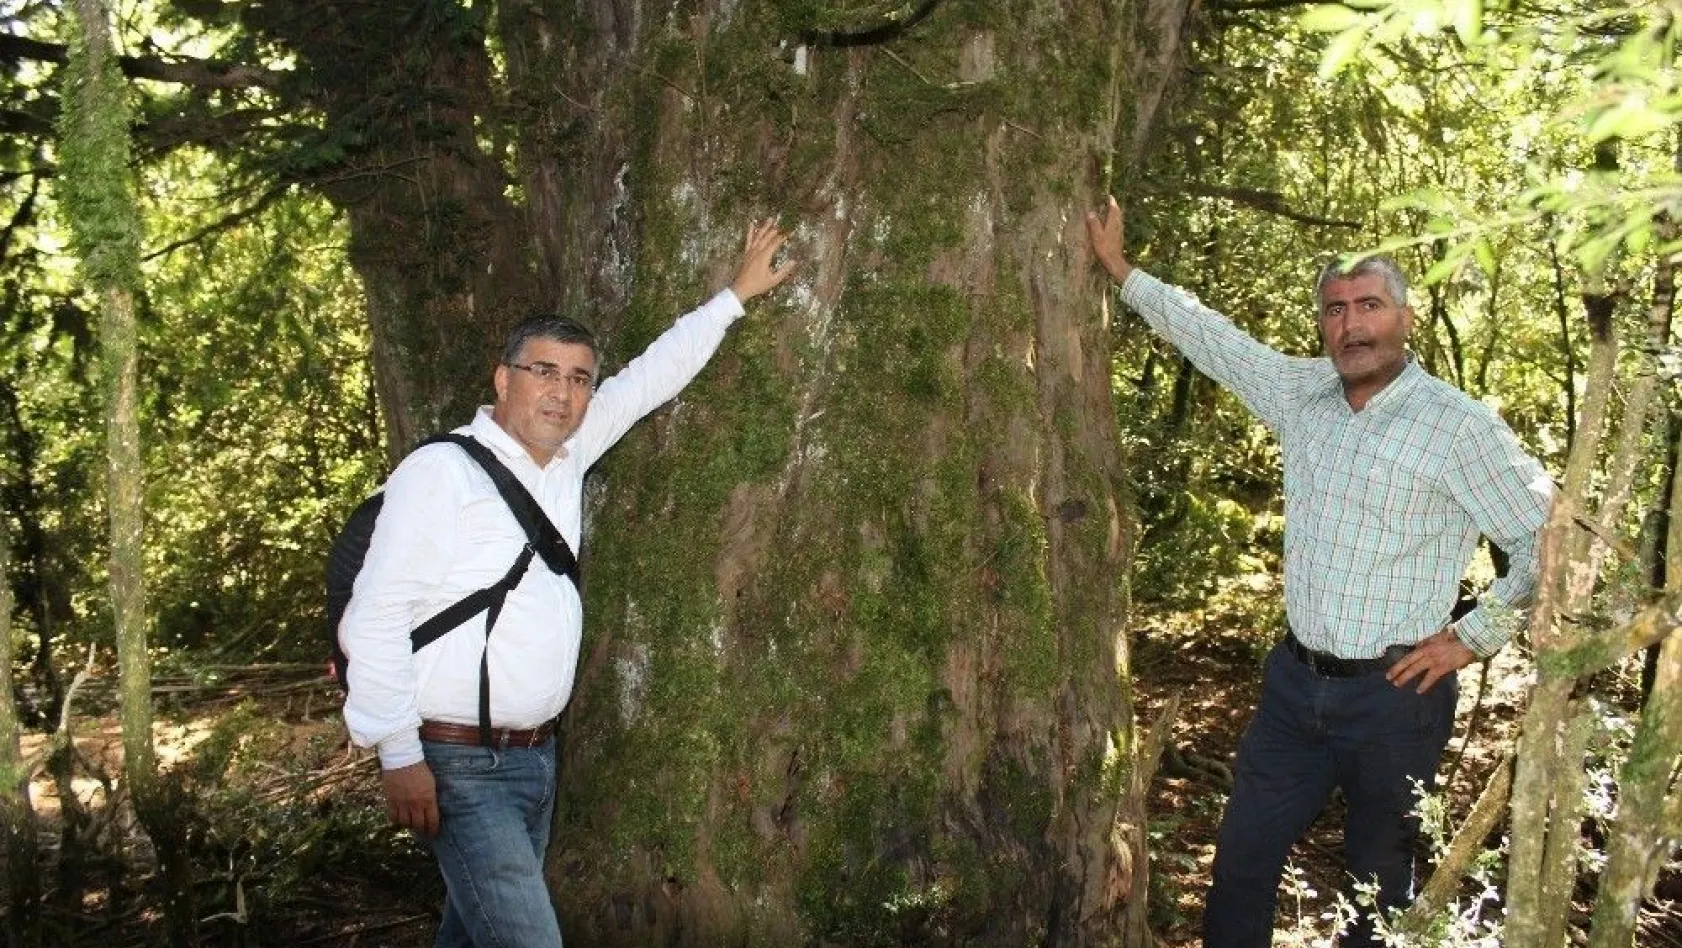 2 bin 700 yıllık 'porsuk' ağacı
